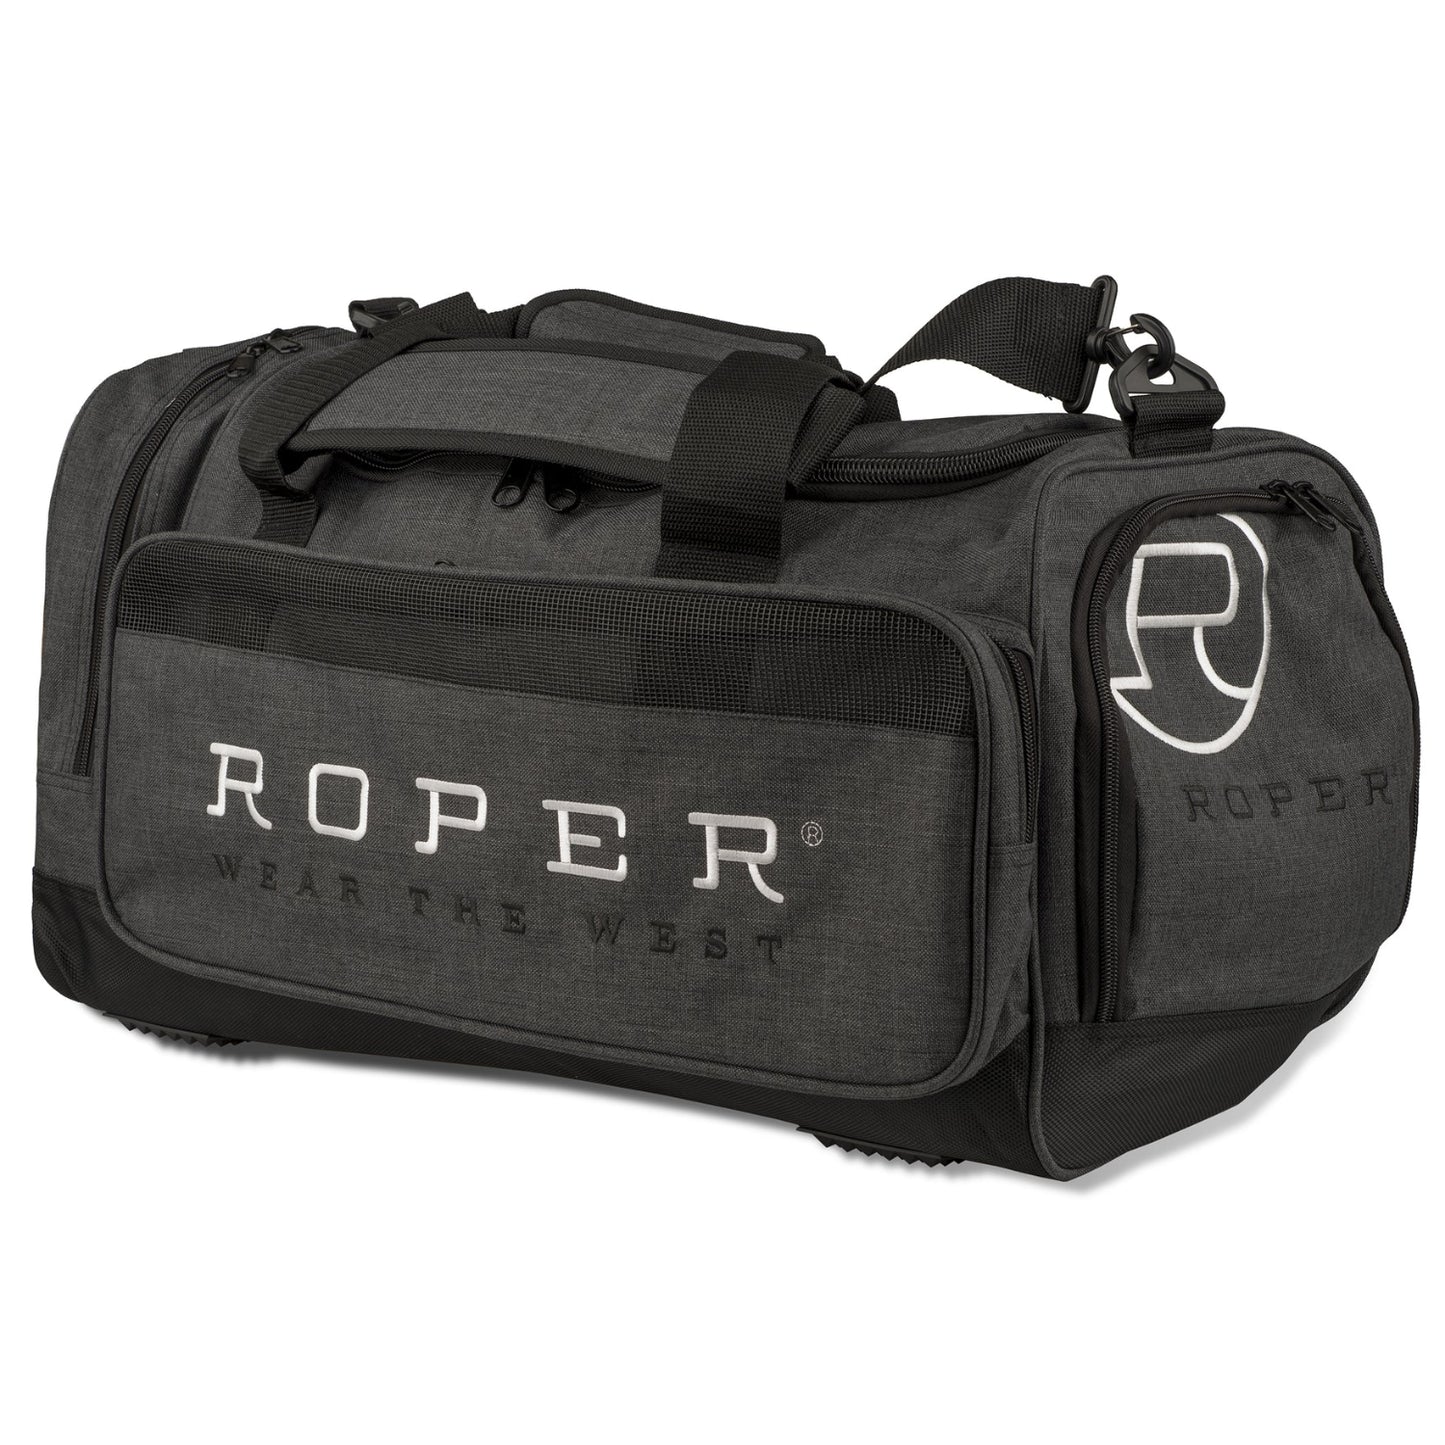 Roper Duffle Bag